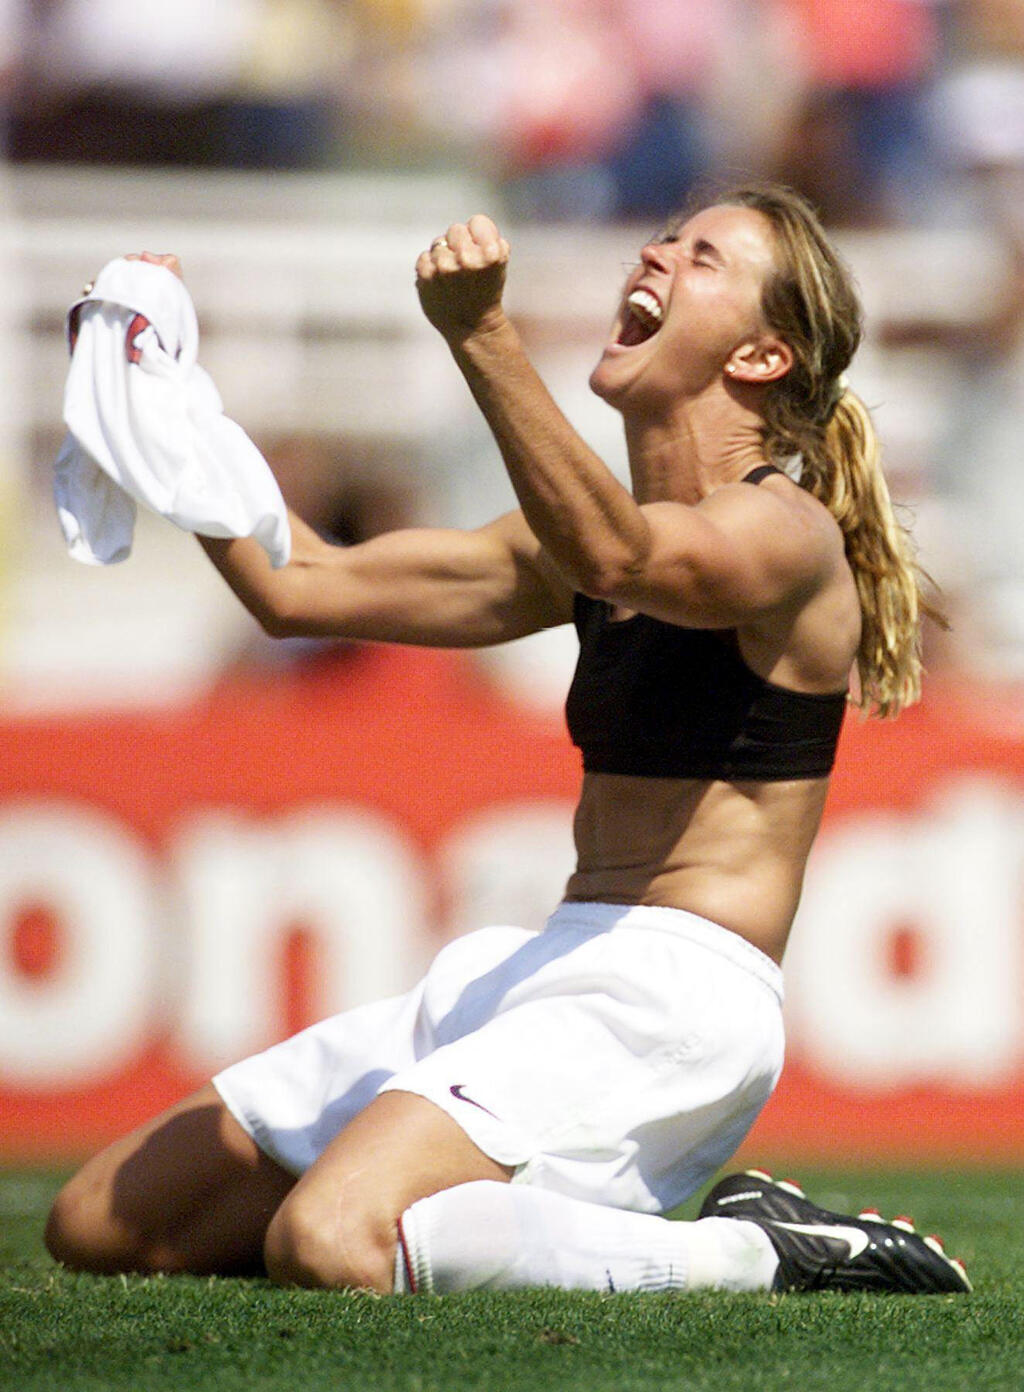 פנאי ברנדי צ'סטיין בחזיית ספורט אחרי ניצחון ארה"ב באליפות העולם בכדורגל לנשים